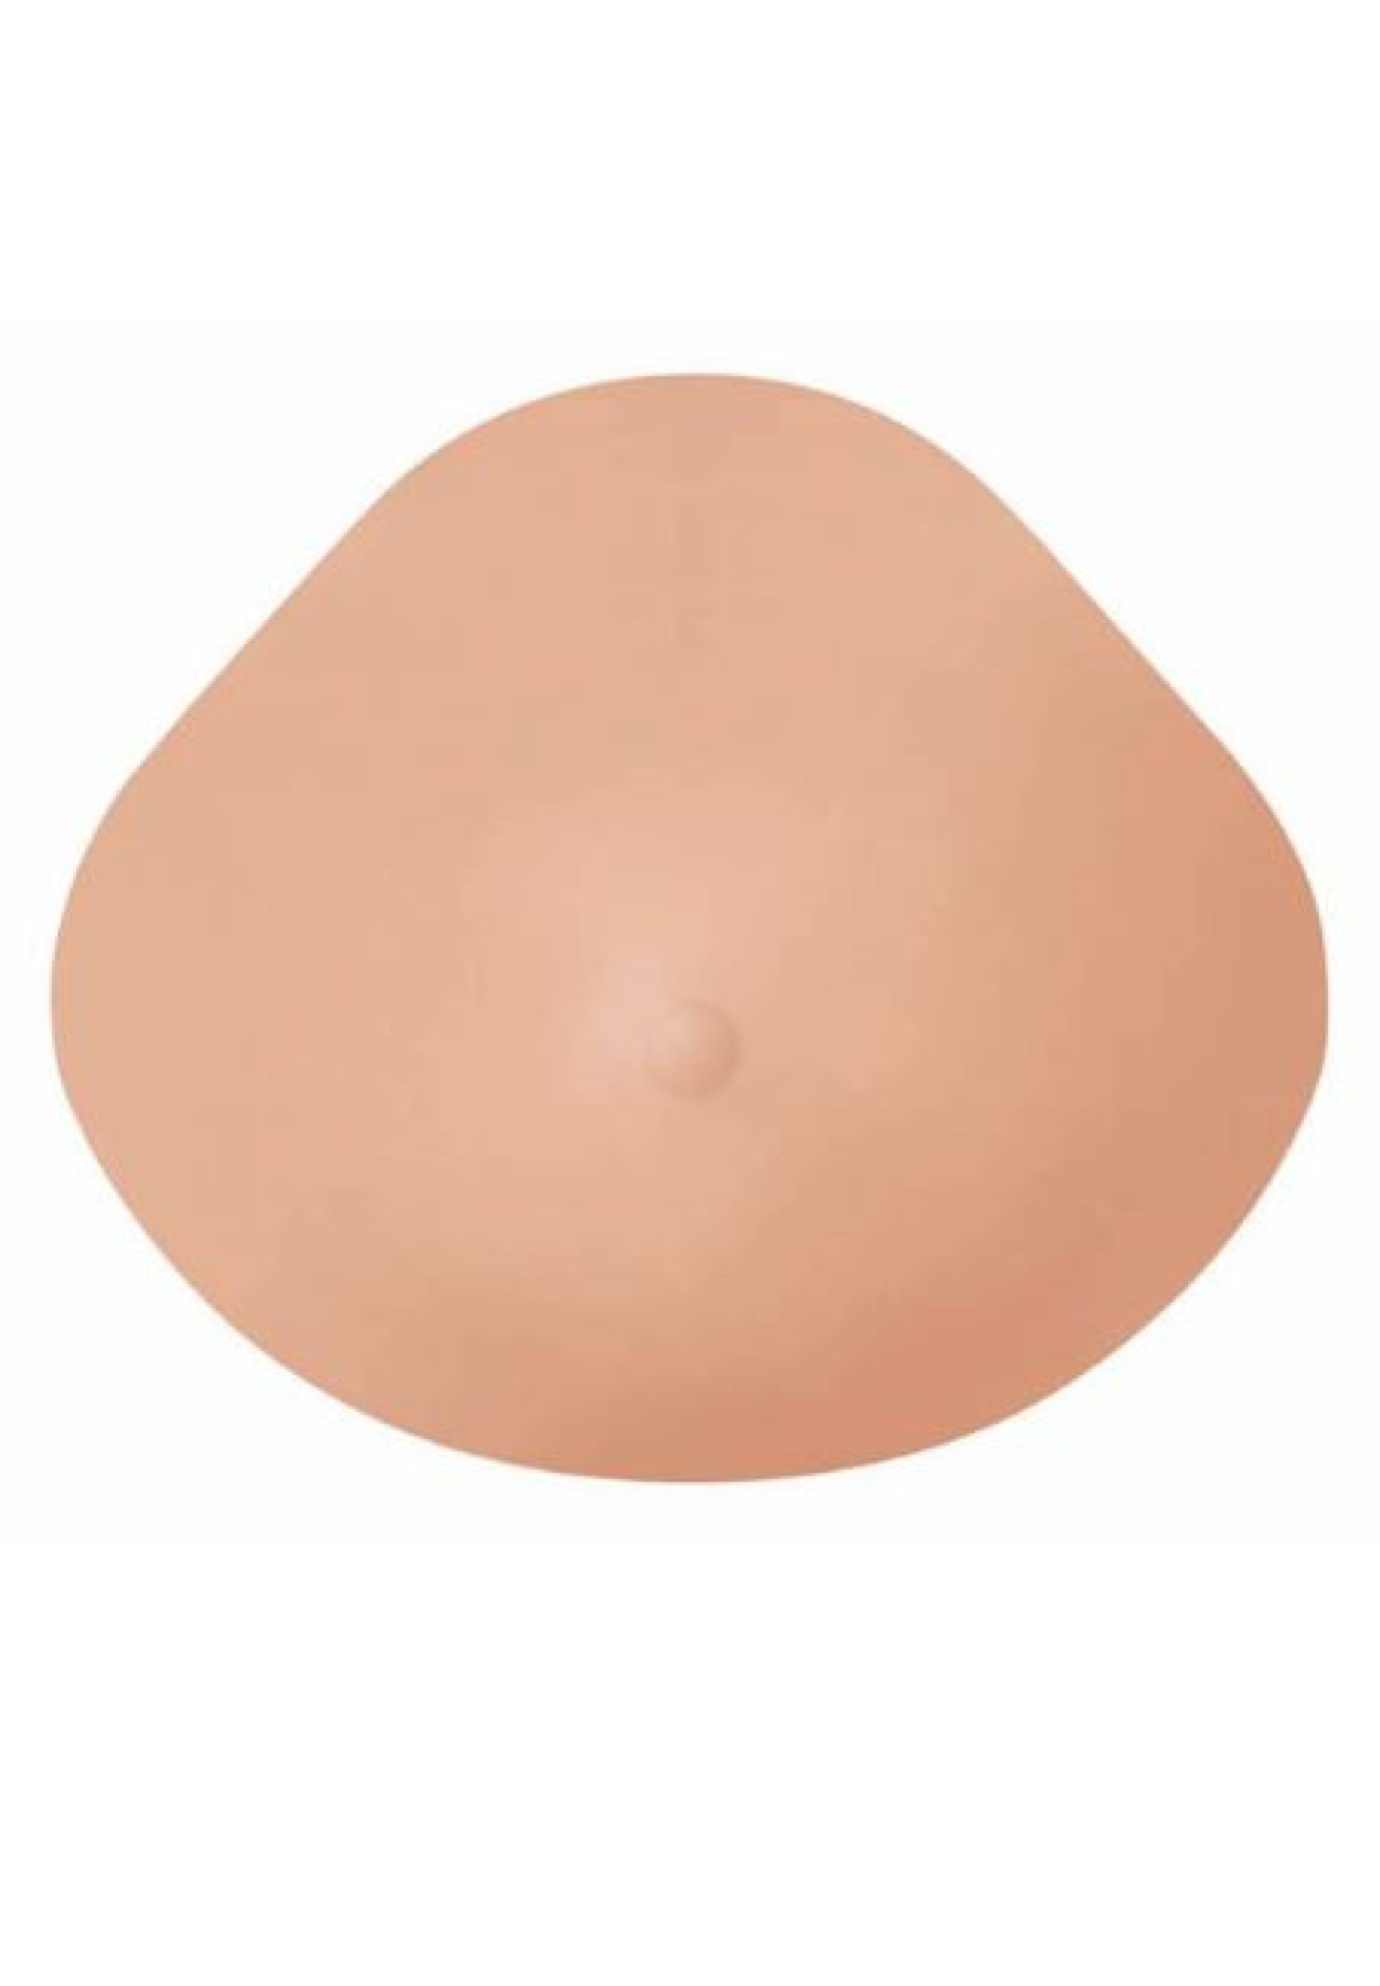 Amoena Natura Breast Forms Xtra Light 1SN - 401, IVORY